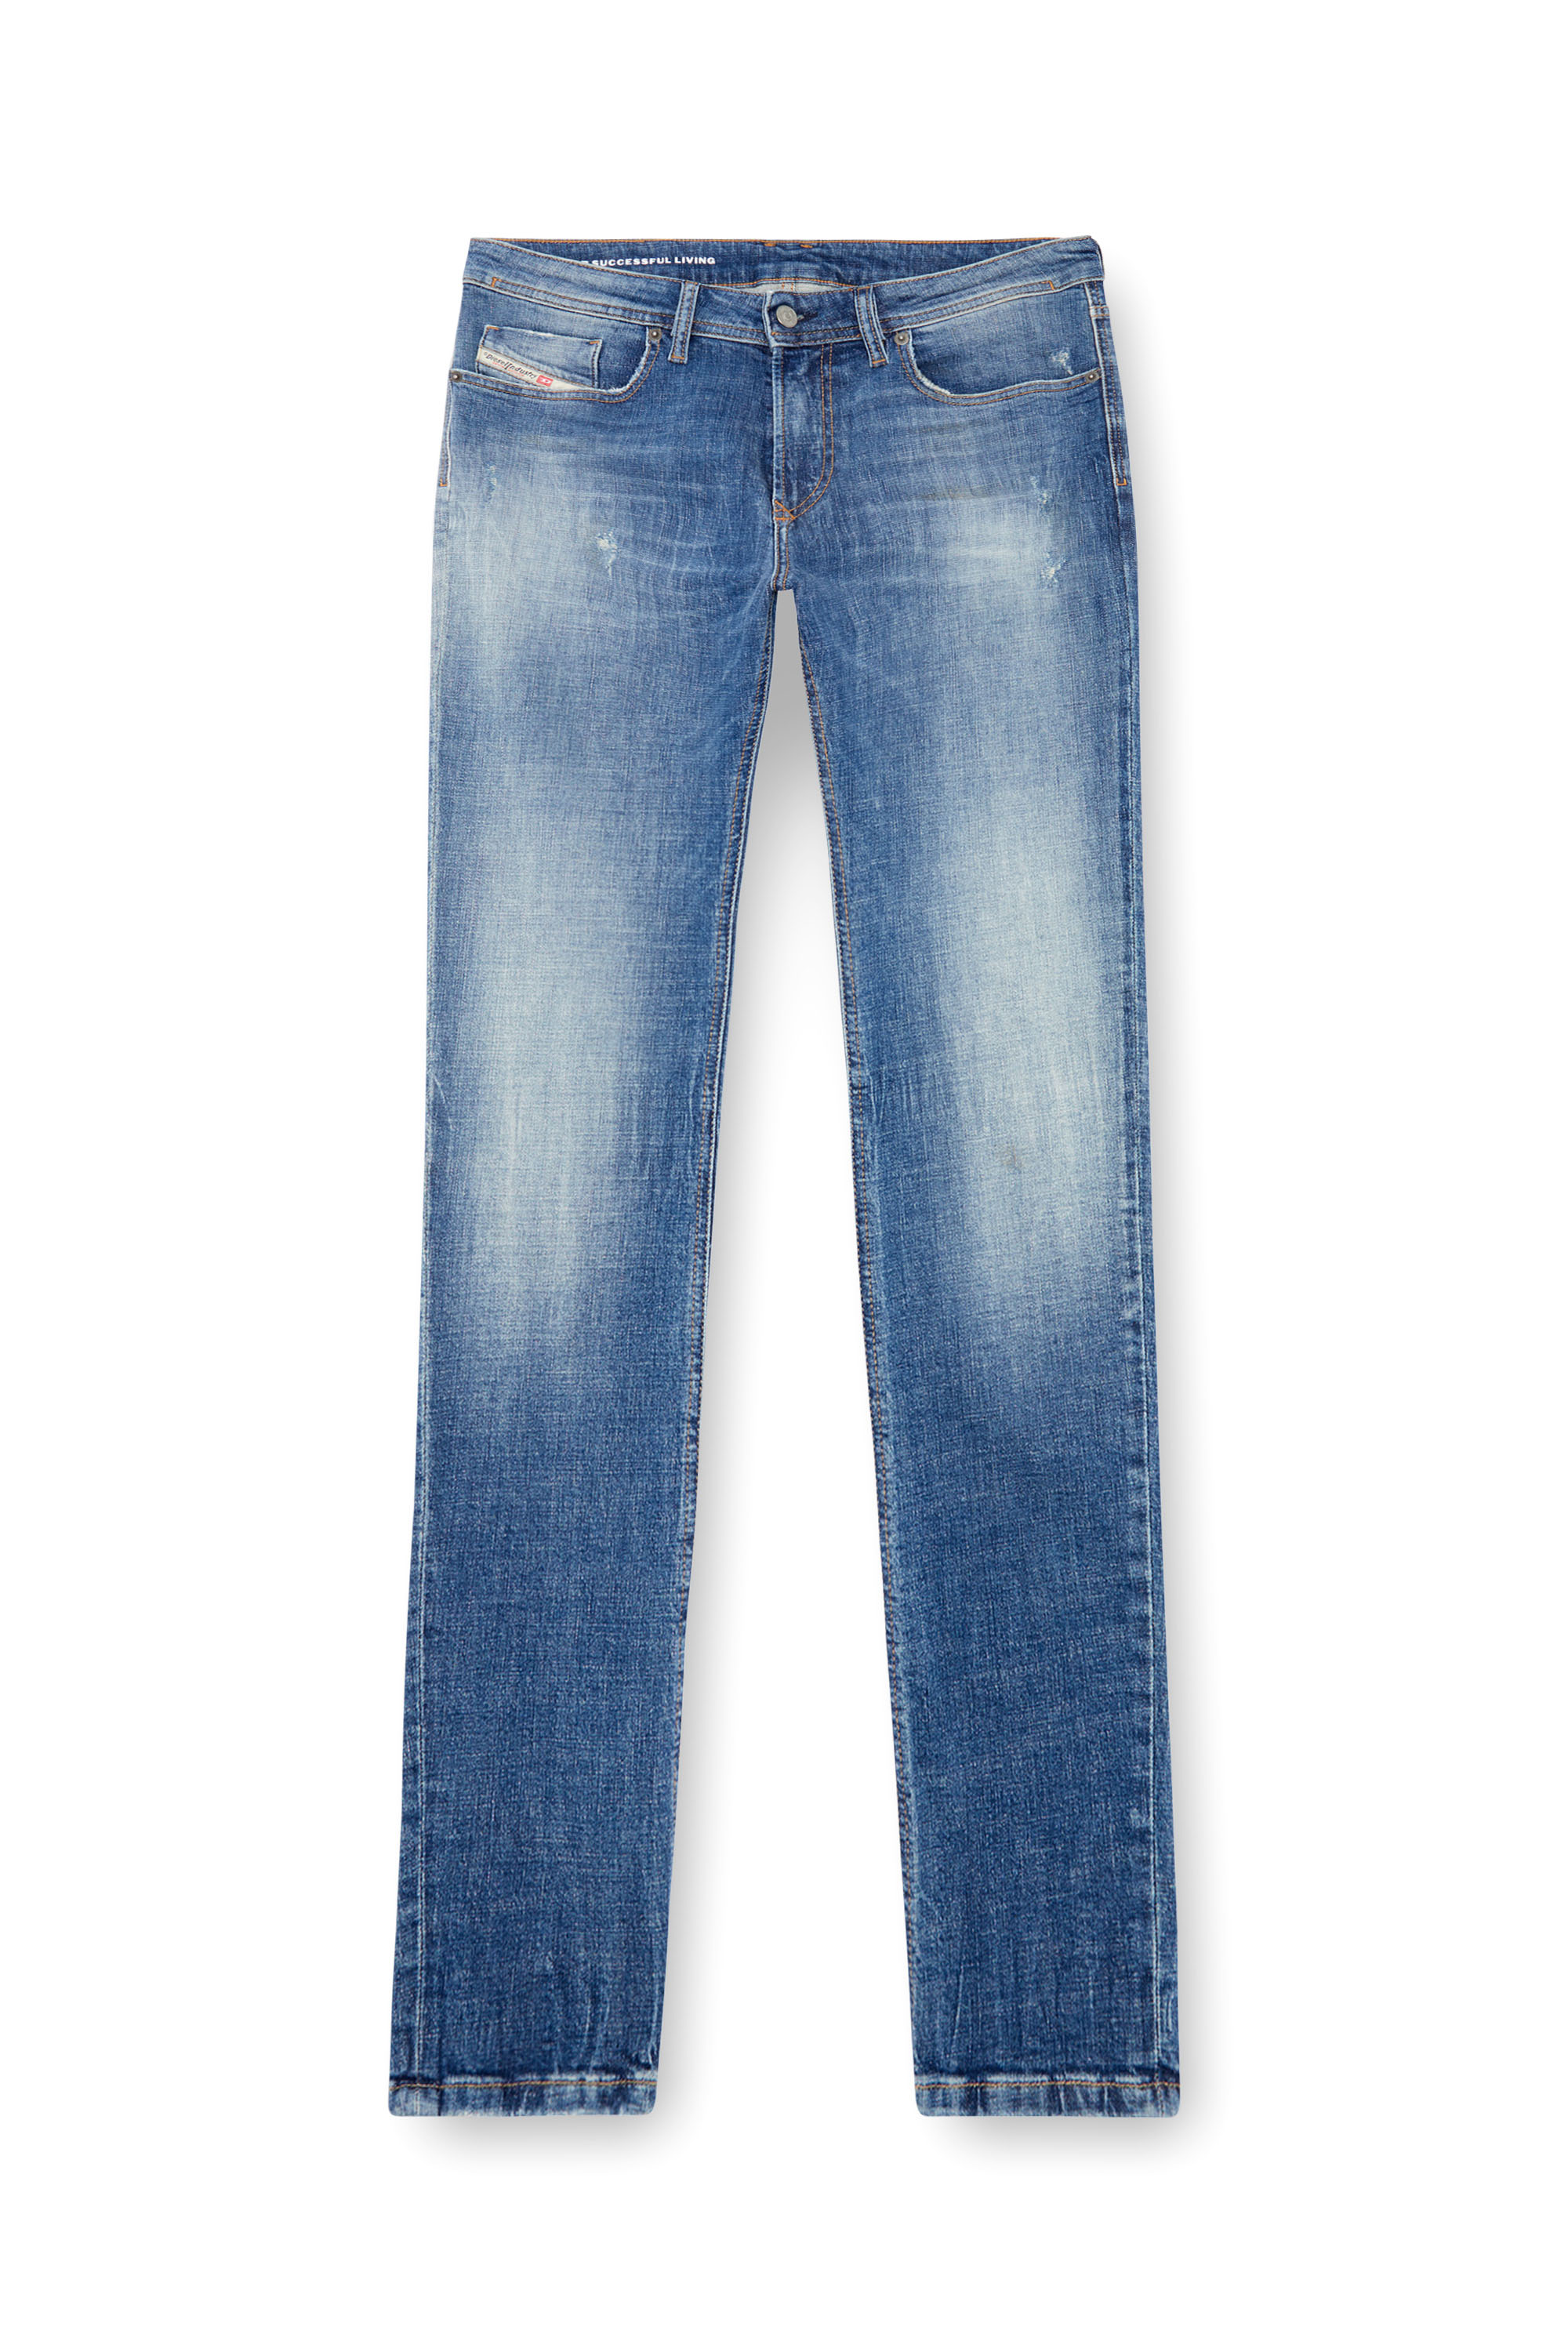 Diesel - Skinny Jeans 1979 Sleenker 0GRDF, Medium blue - Image 5